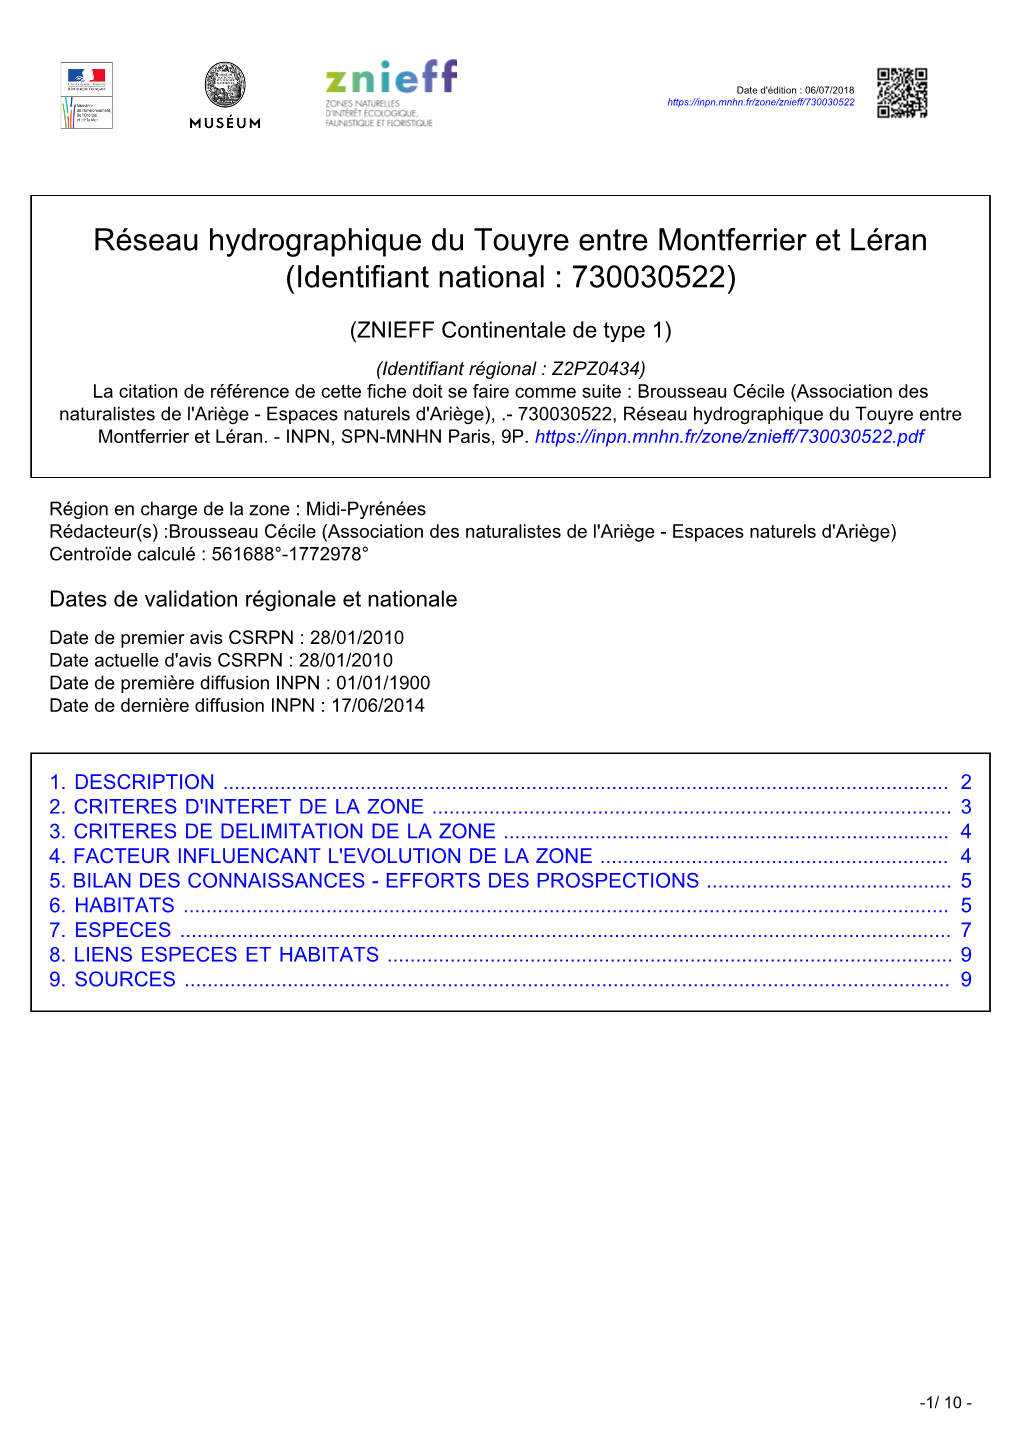 Réseau Hydrographique Du Touyre Entre Montferrier Et Léran (Identifiant National : 730030522)